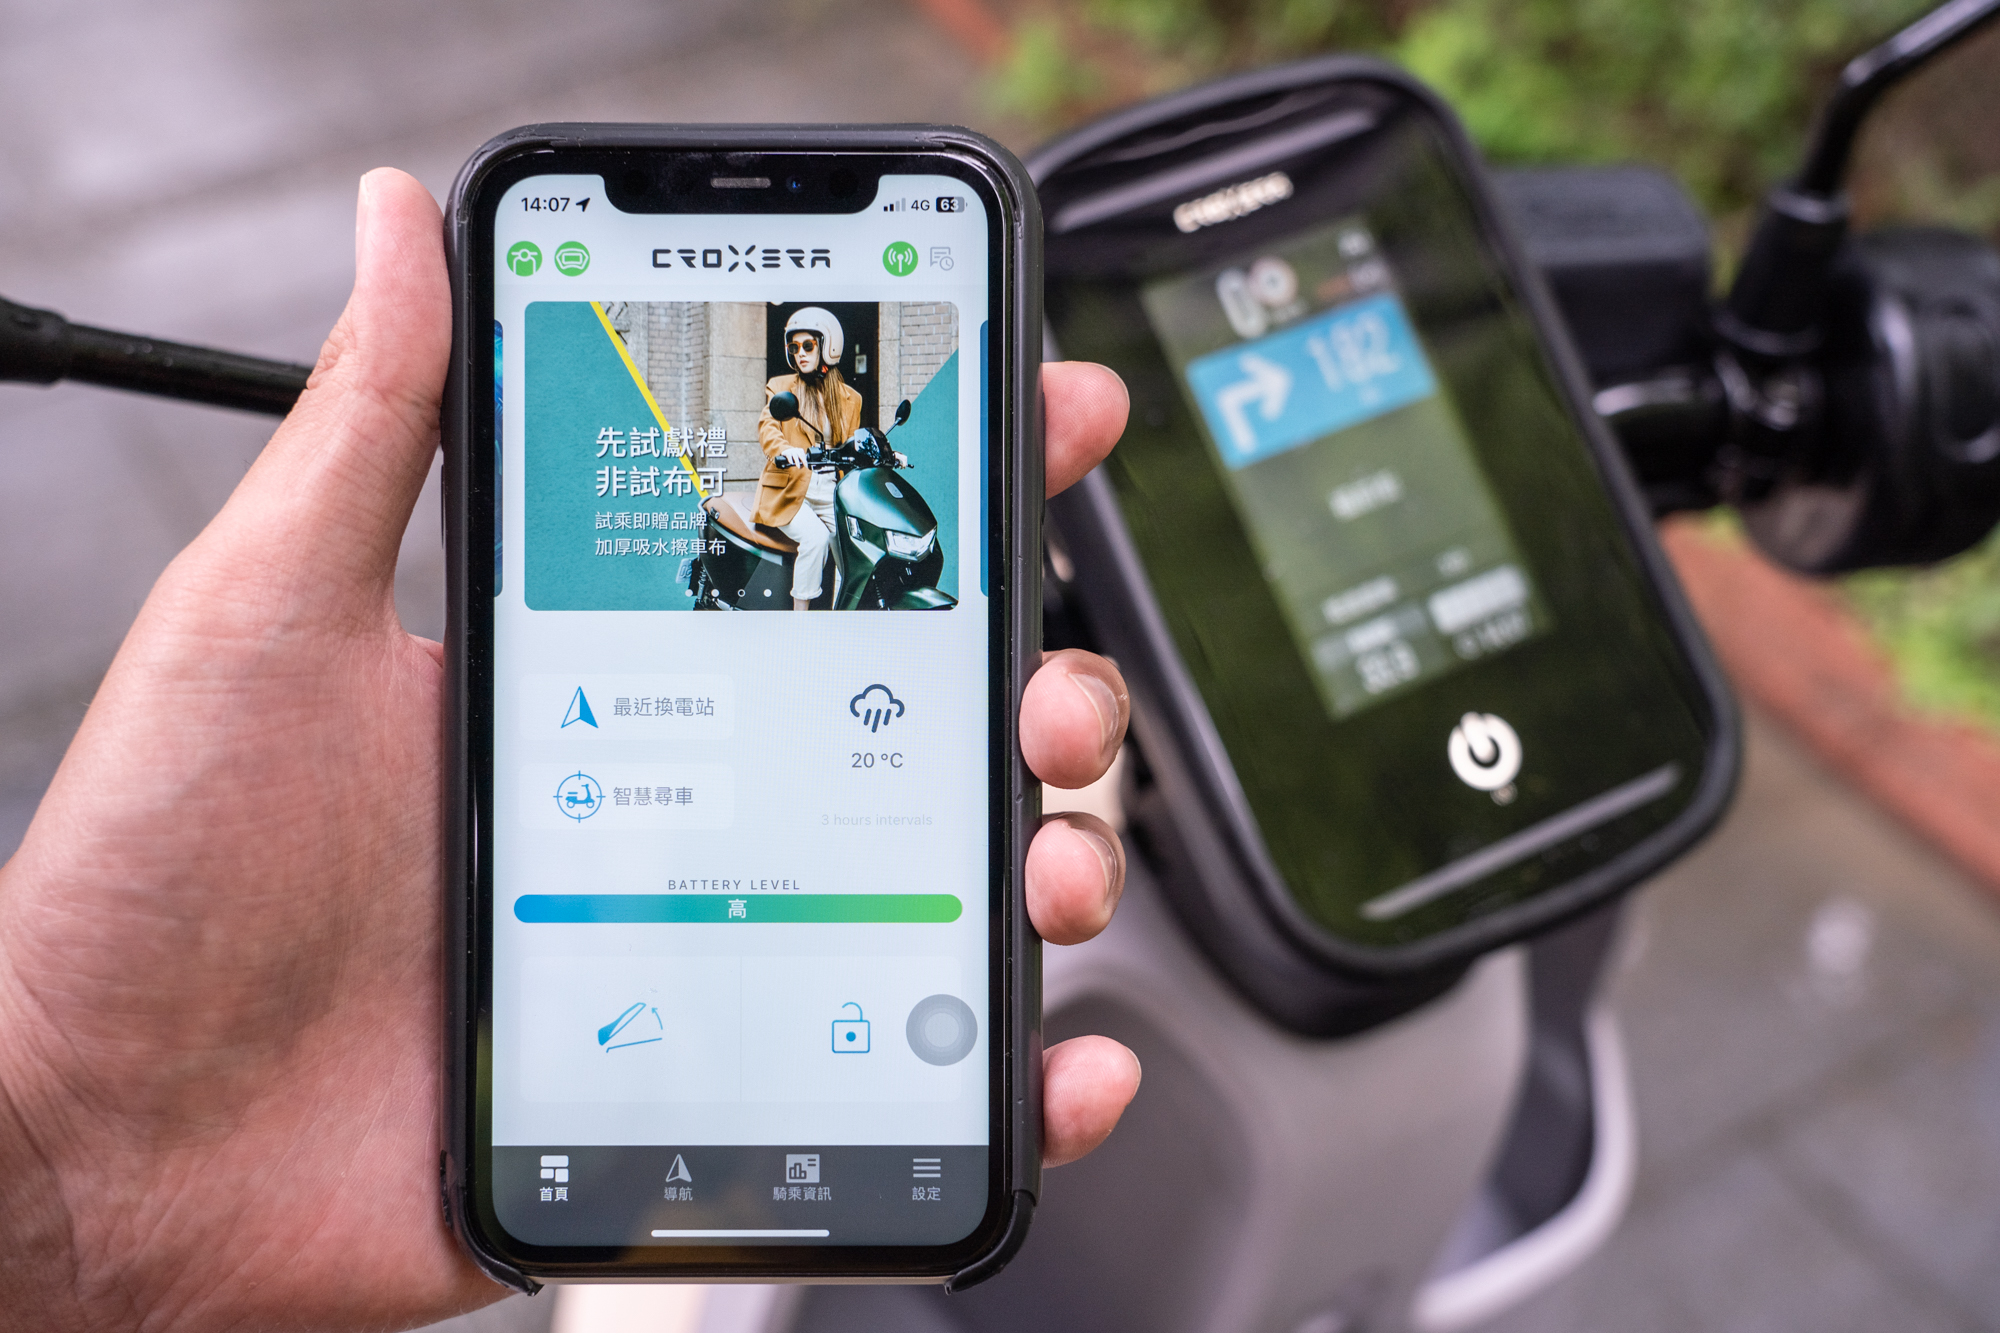 與 Croxera App 連動可提供包含導航、騎乘資訊、車況檢測等多樣功能。